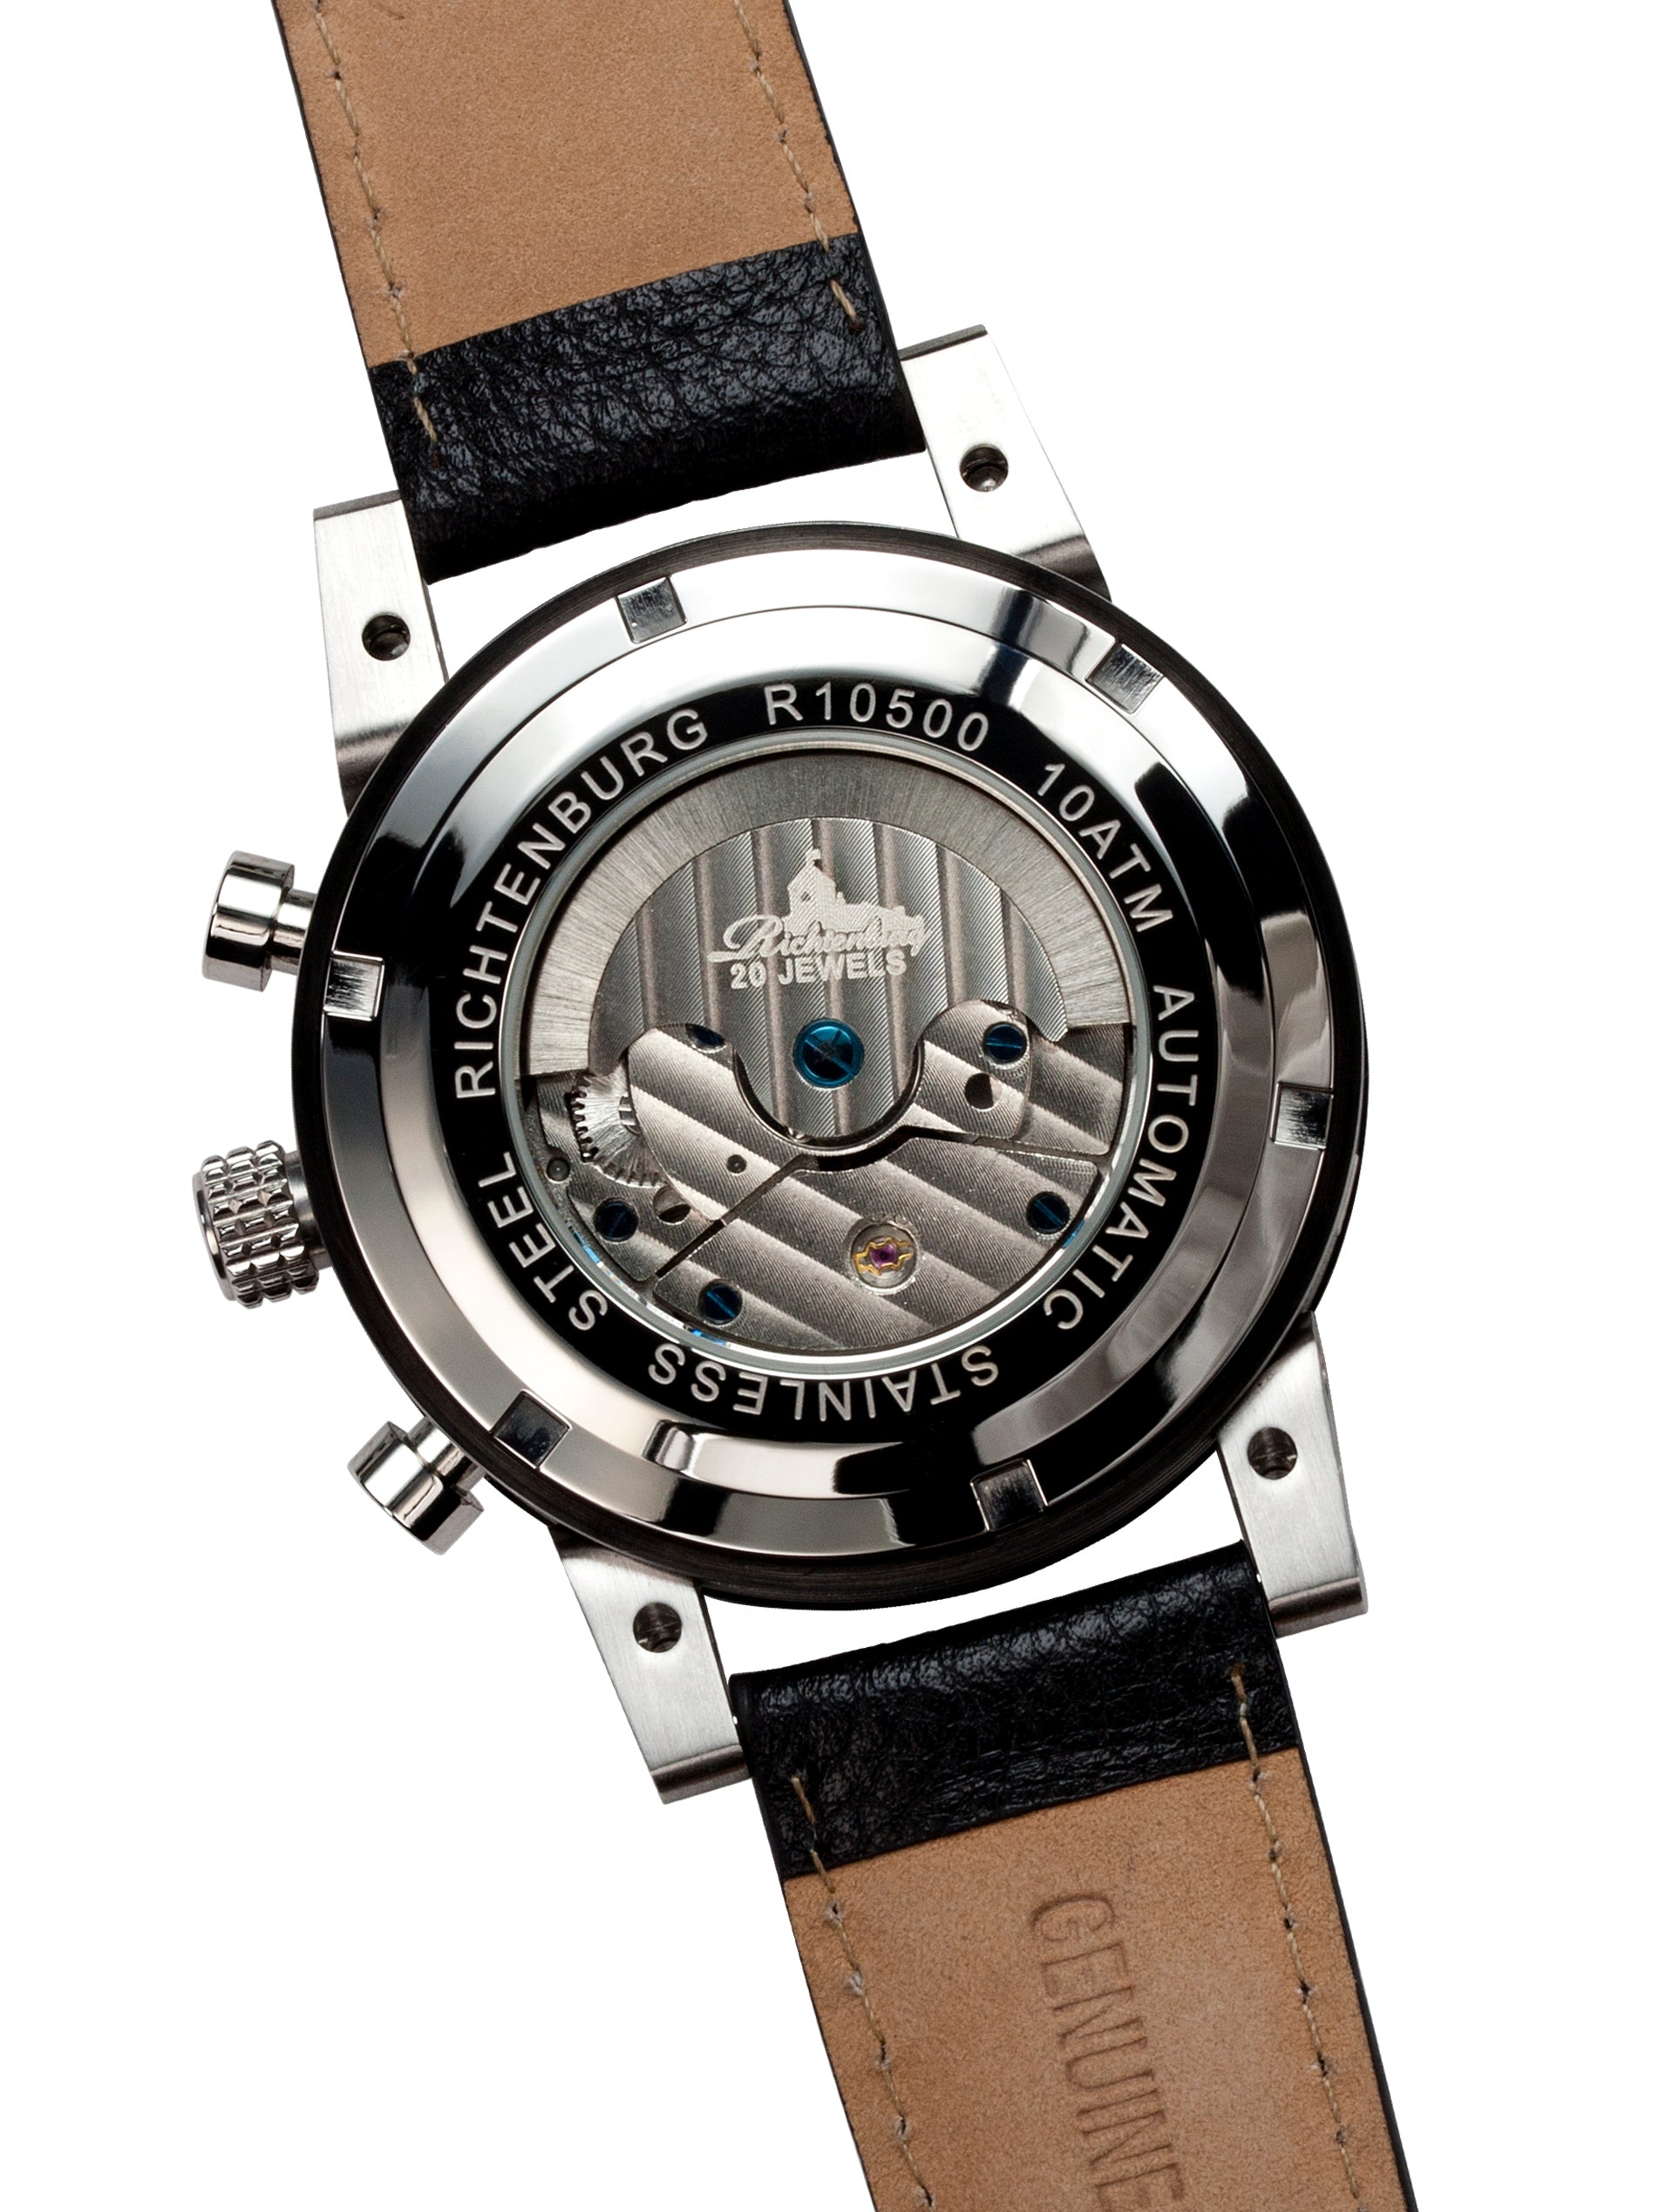 Automatic watches — Newport — Richtenburg — blue